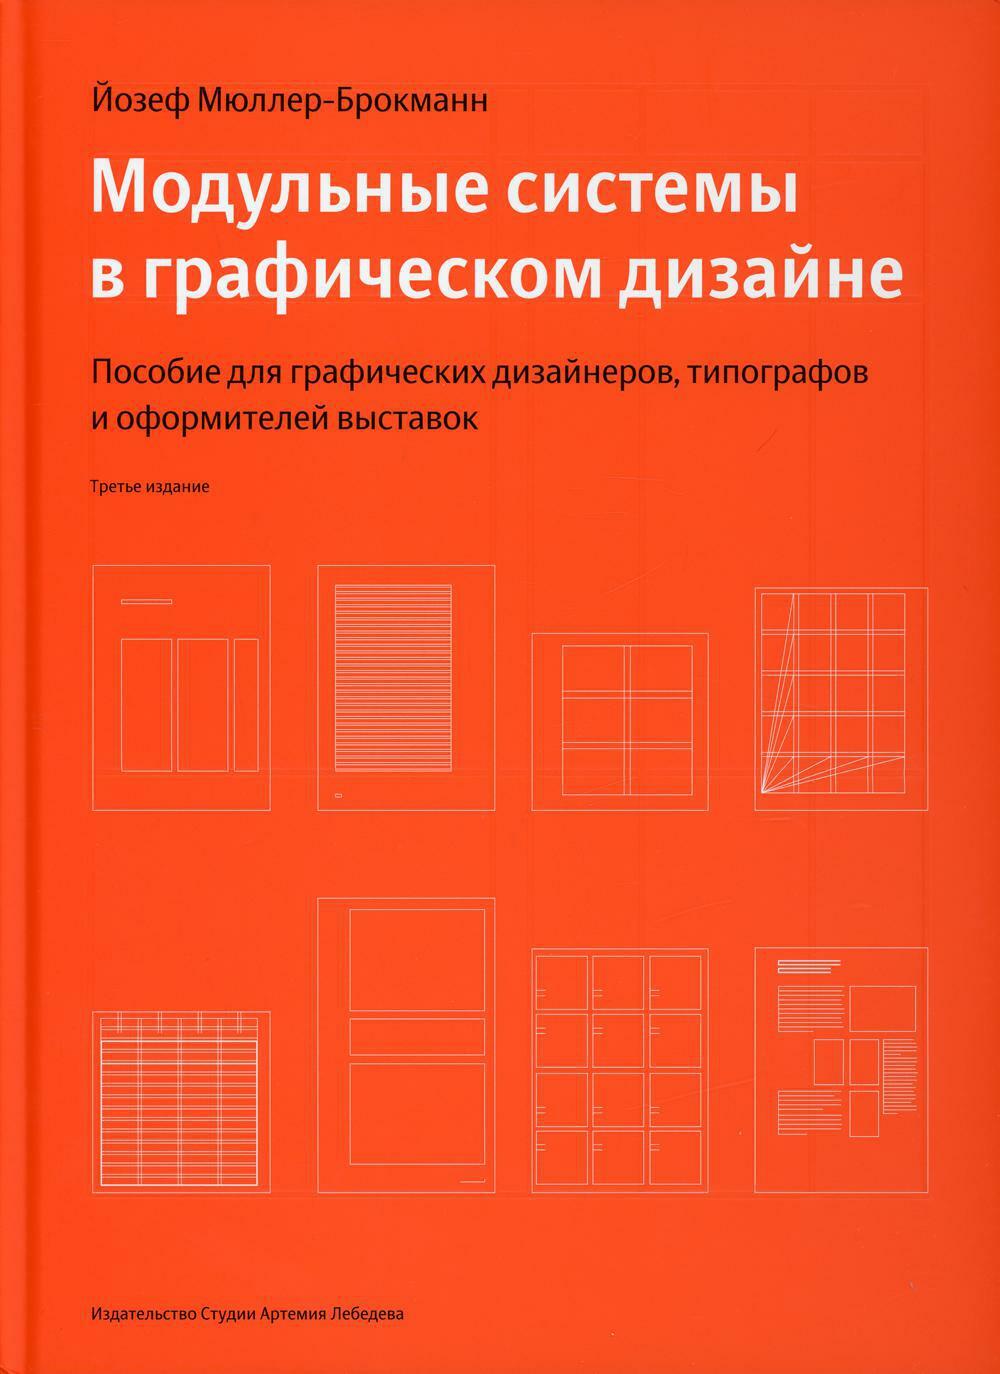 Модульные системы в графическом дизайне. Пособие для графиков, типографов и оформителей выставок. 4-е изд